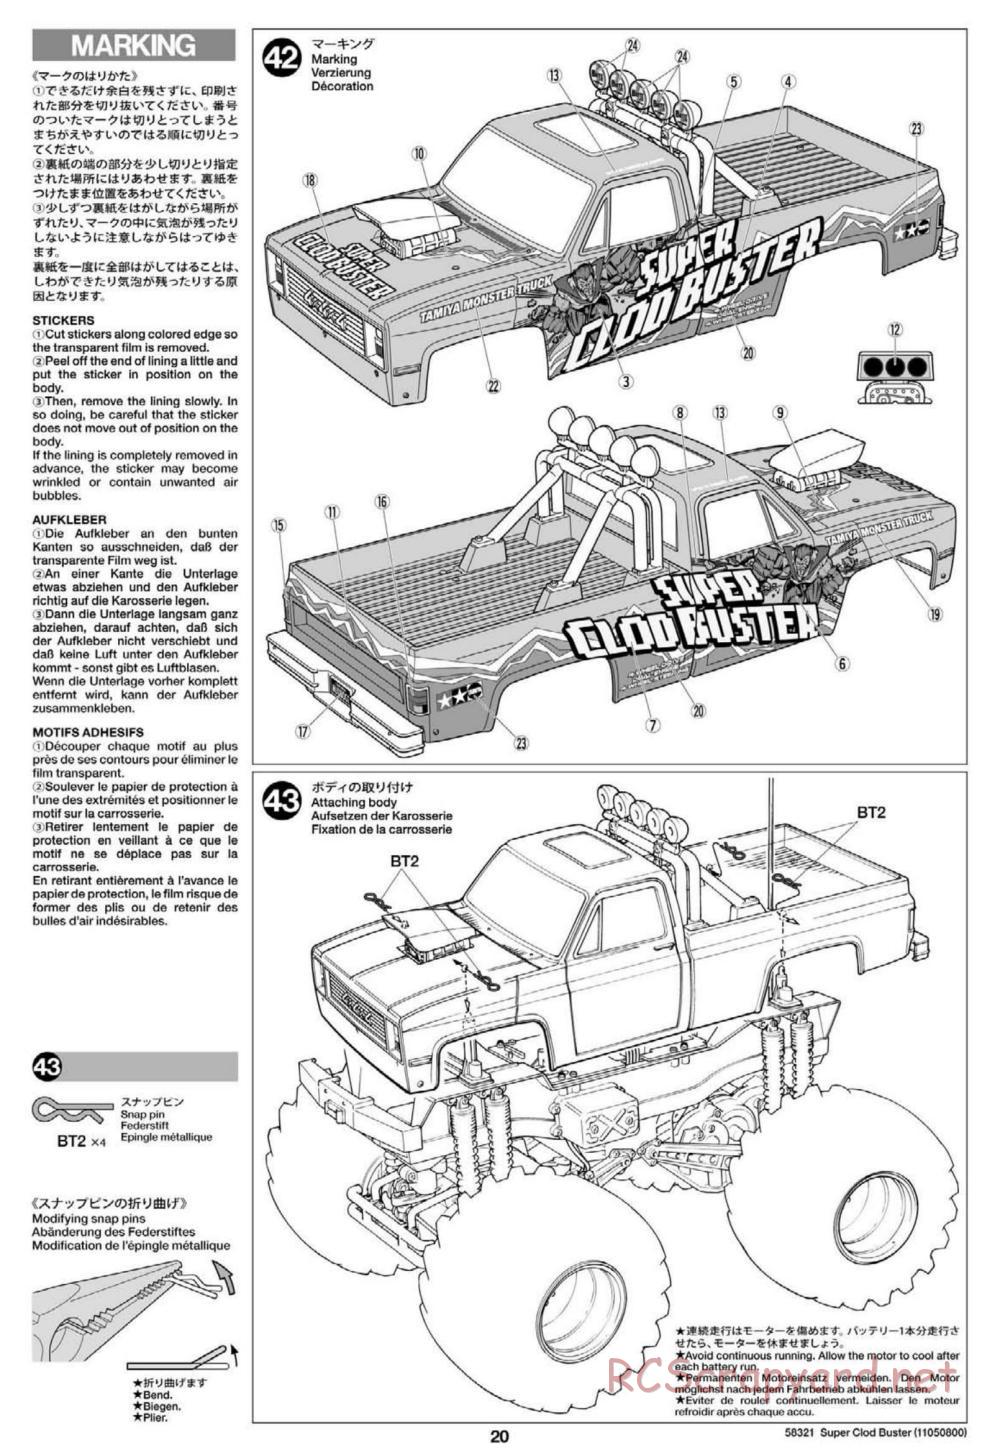 Tamiya - Super Clod Buster Chassis - Manual - Page 20